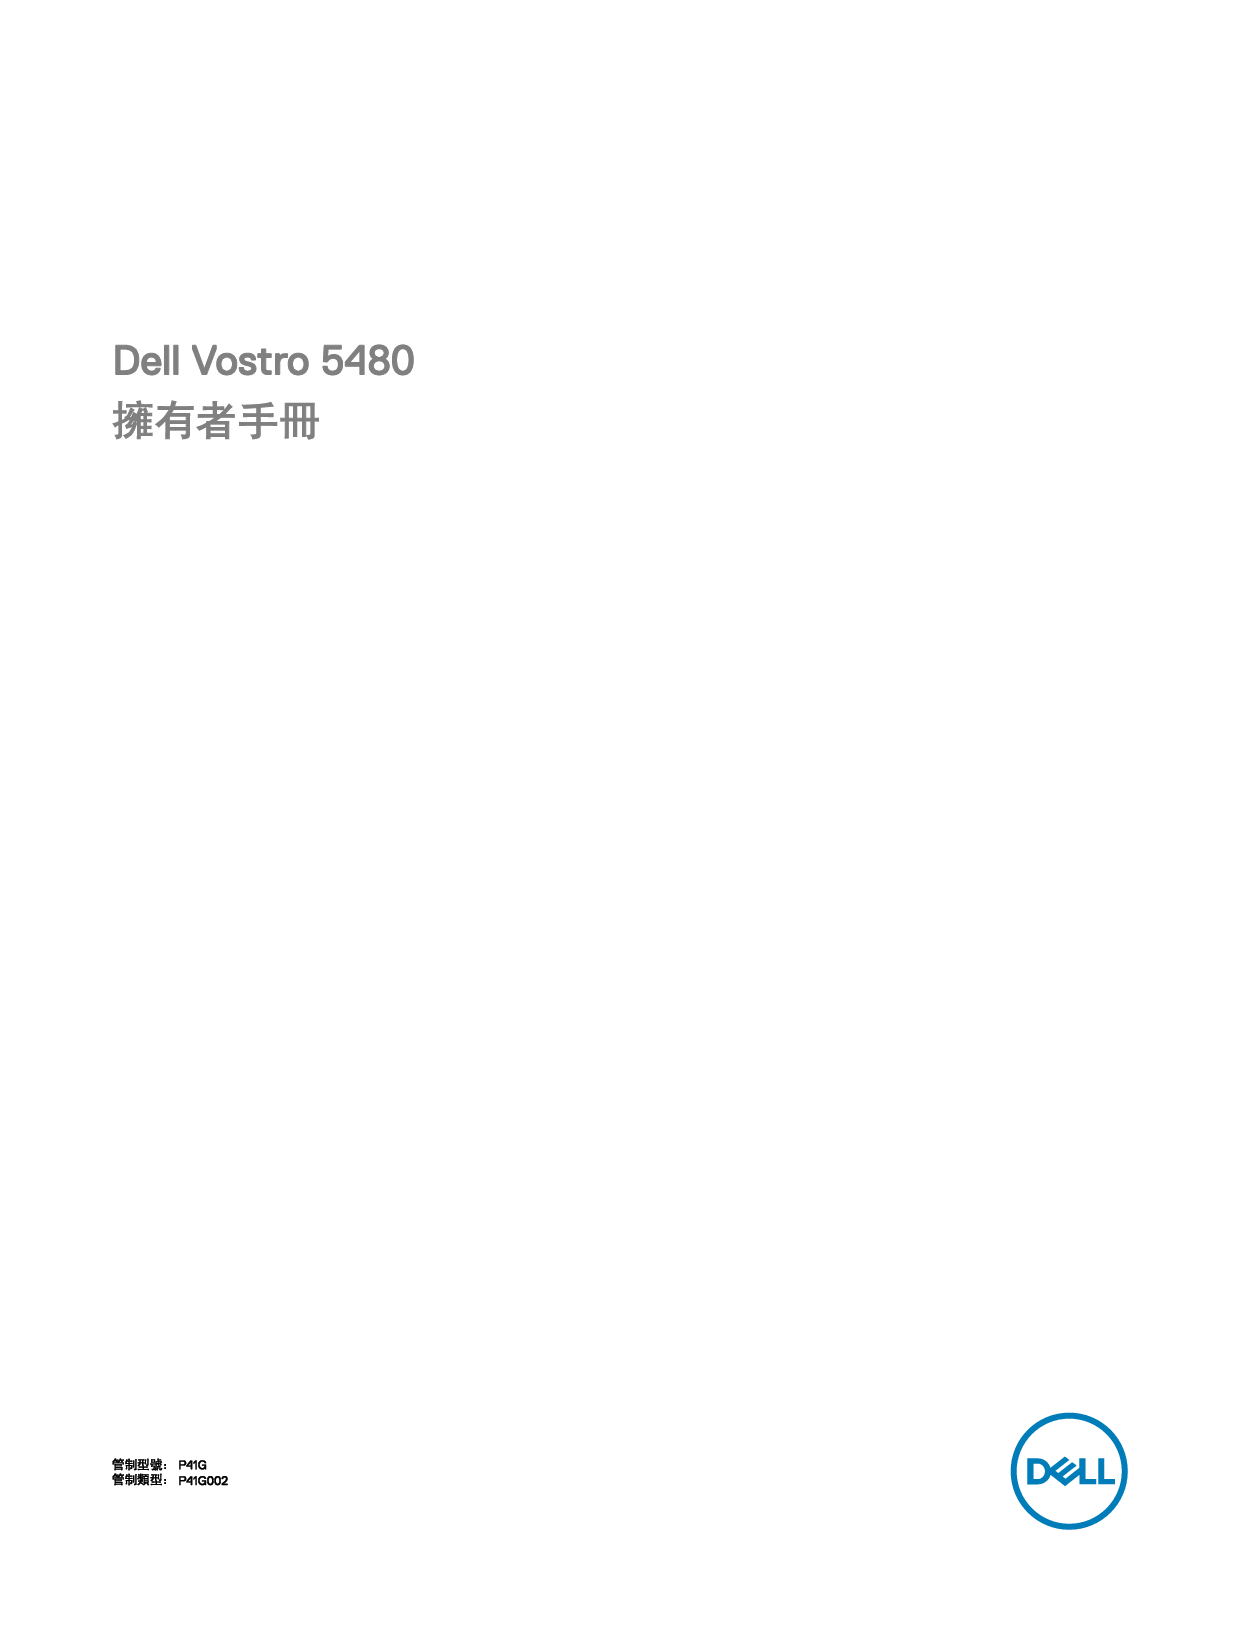 戴尔 Dell Vostro 5480 繁体 用户手册 封面